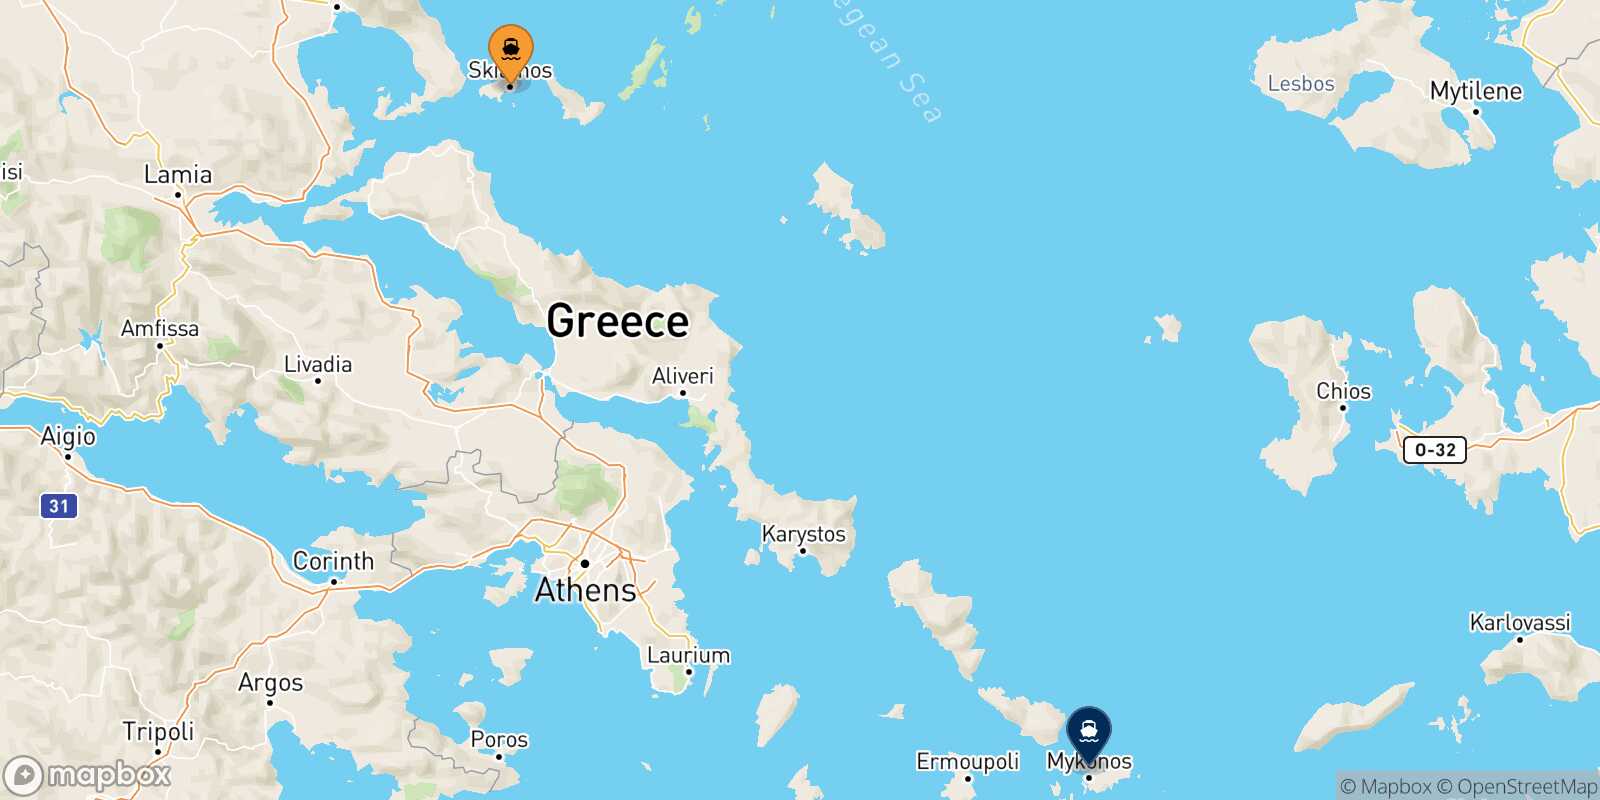 Skiathos Mykonos route map